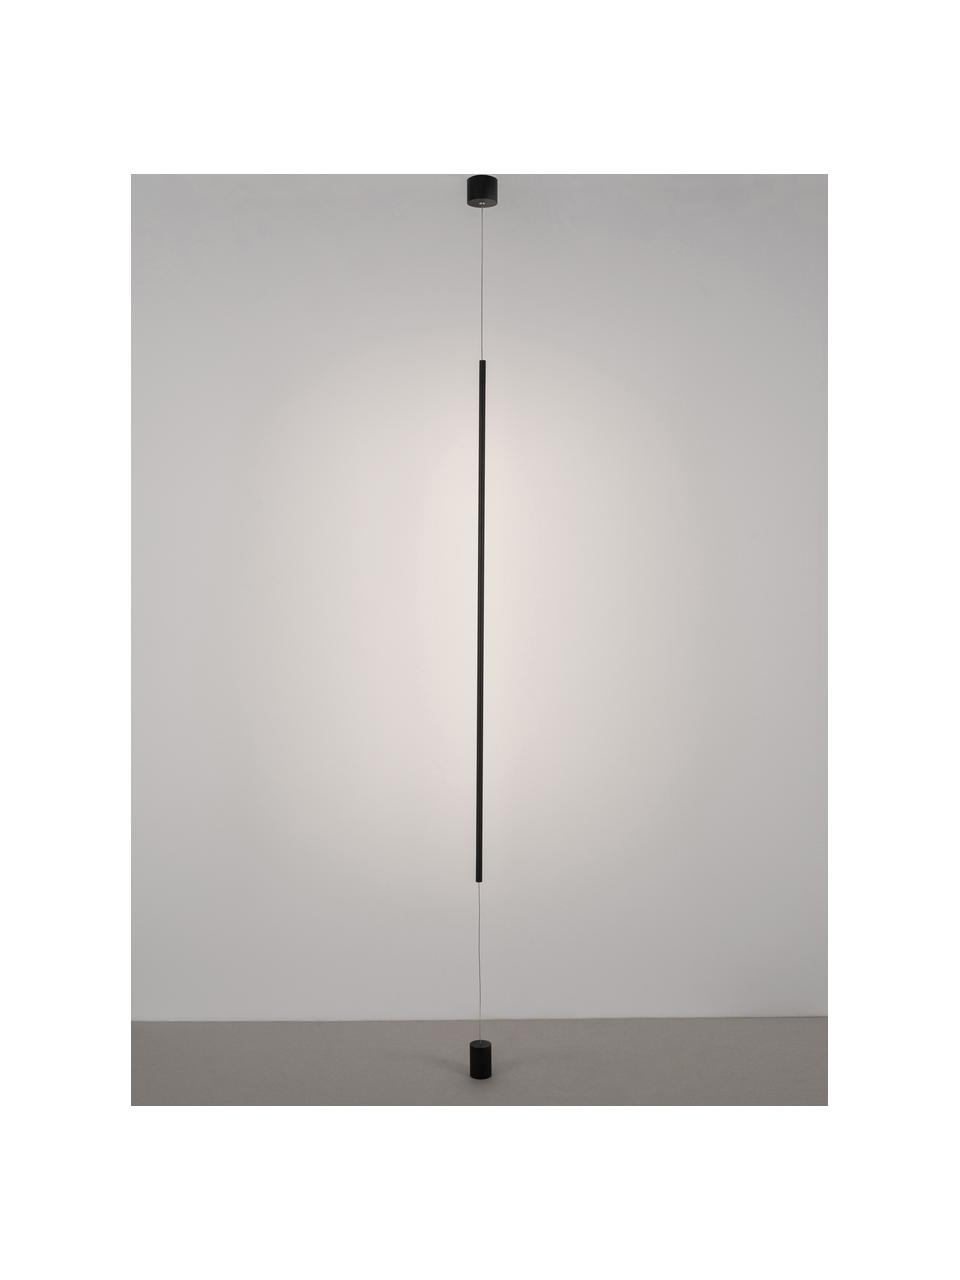 Designové závěsné LED svítidlo s podlahovým upevněním Elettra, Černá, Ø 7 cm, V 120 cm